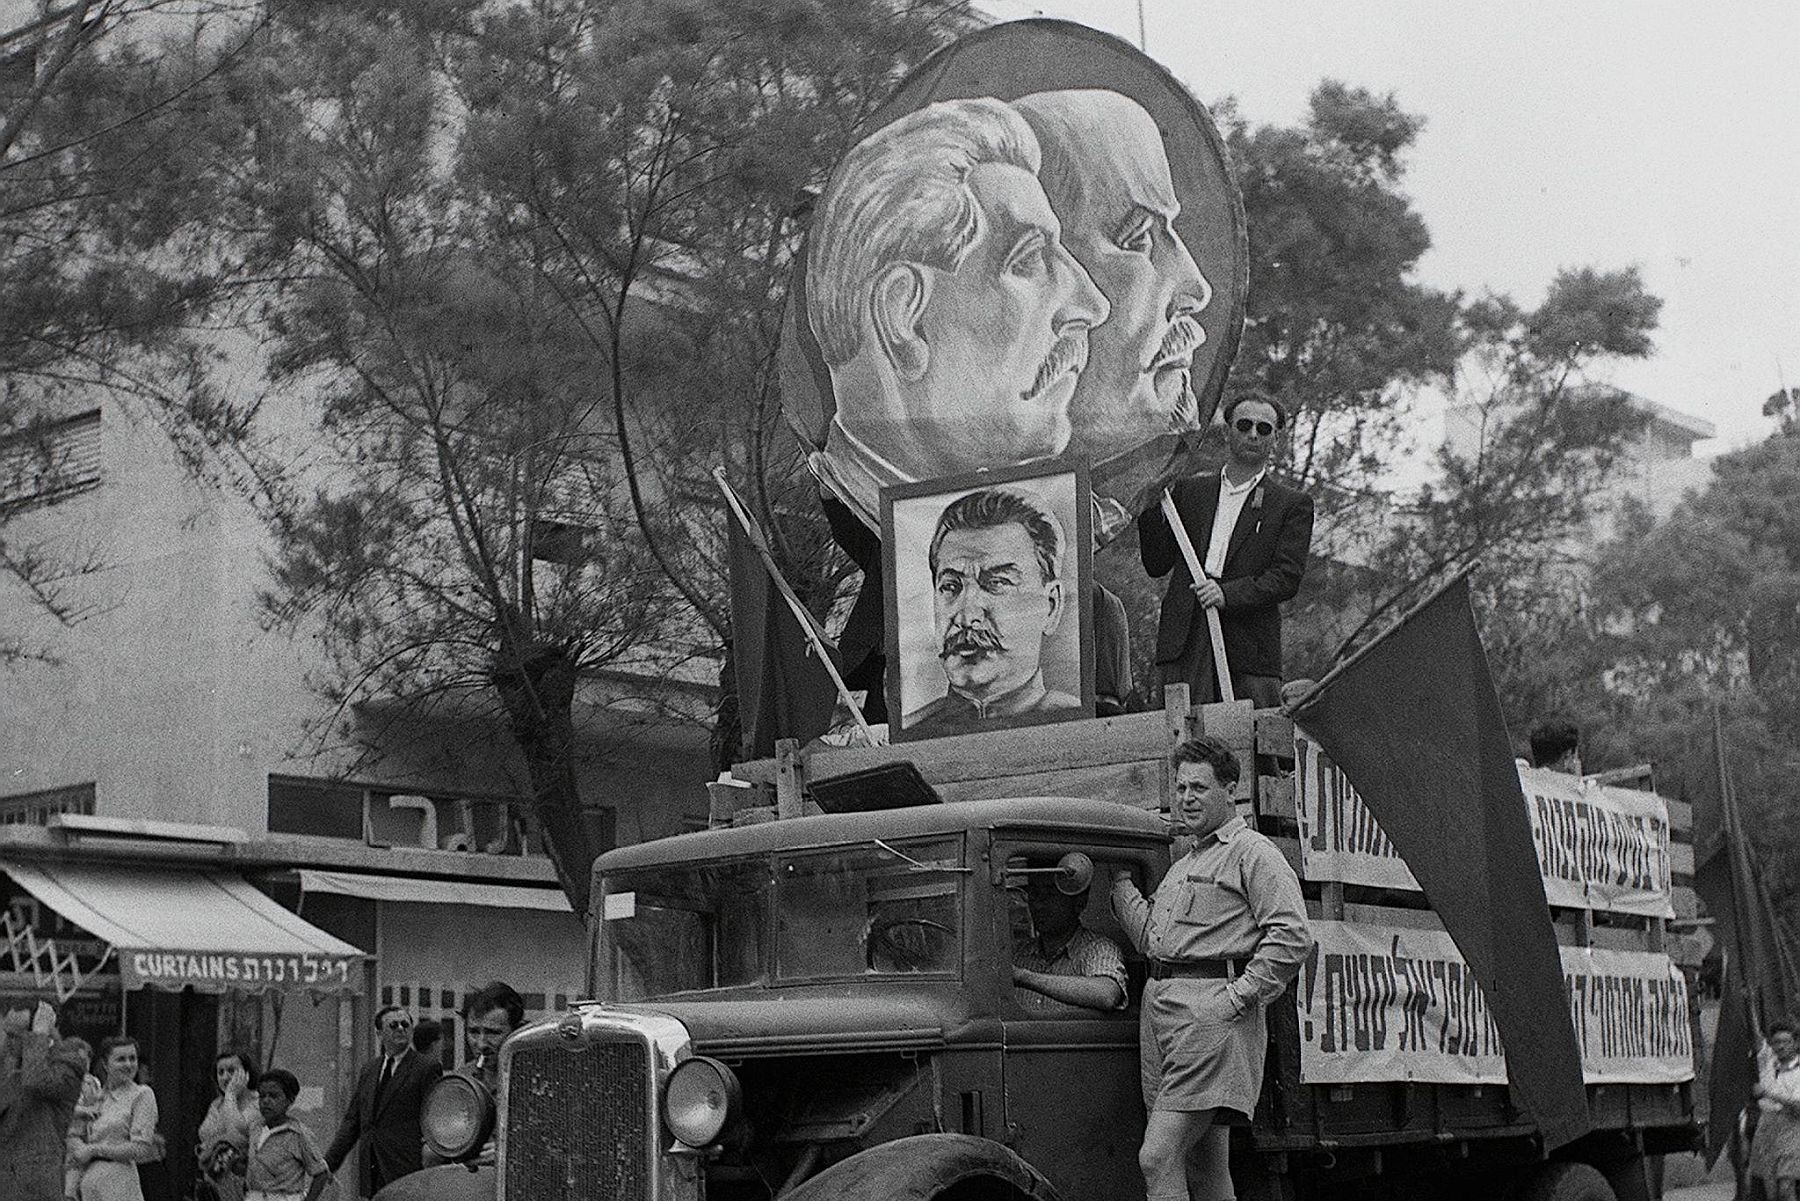 התחנך על ברכי הסטליניזם של מפ"ם. משאית של מפם"ם במצעד ה-1 במאי 1949 בתל אביב (צילום: האנס פין / לע"מ)